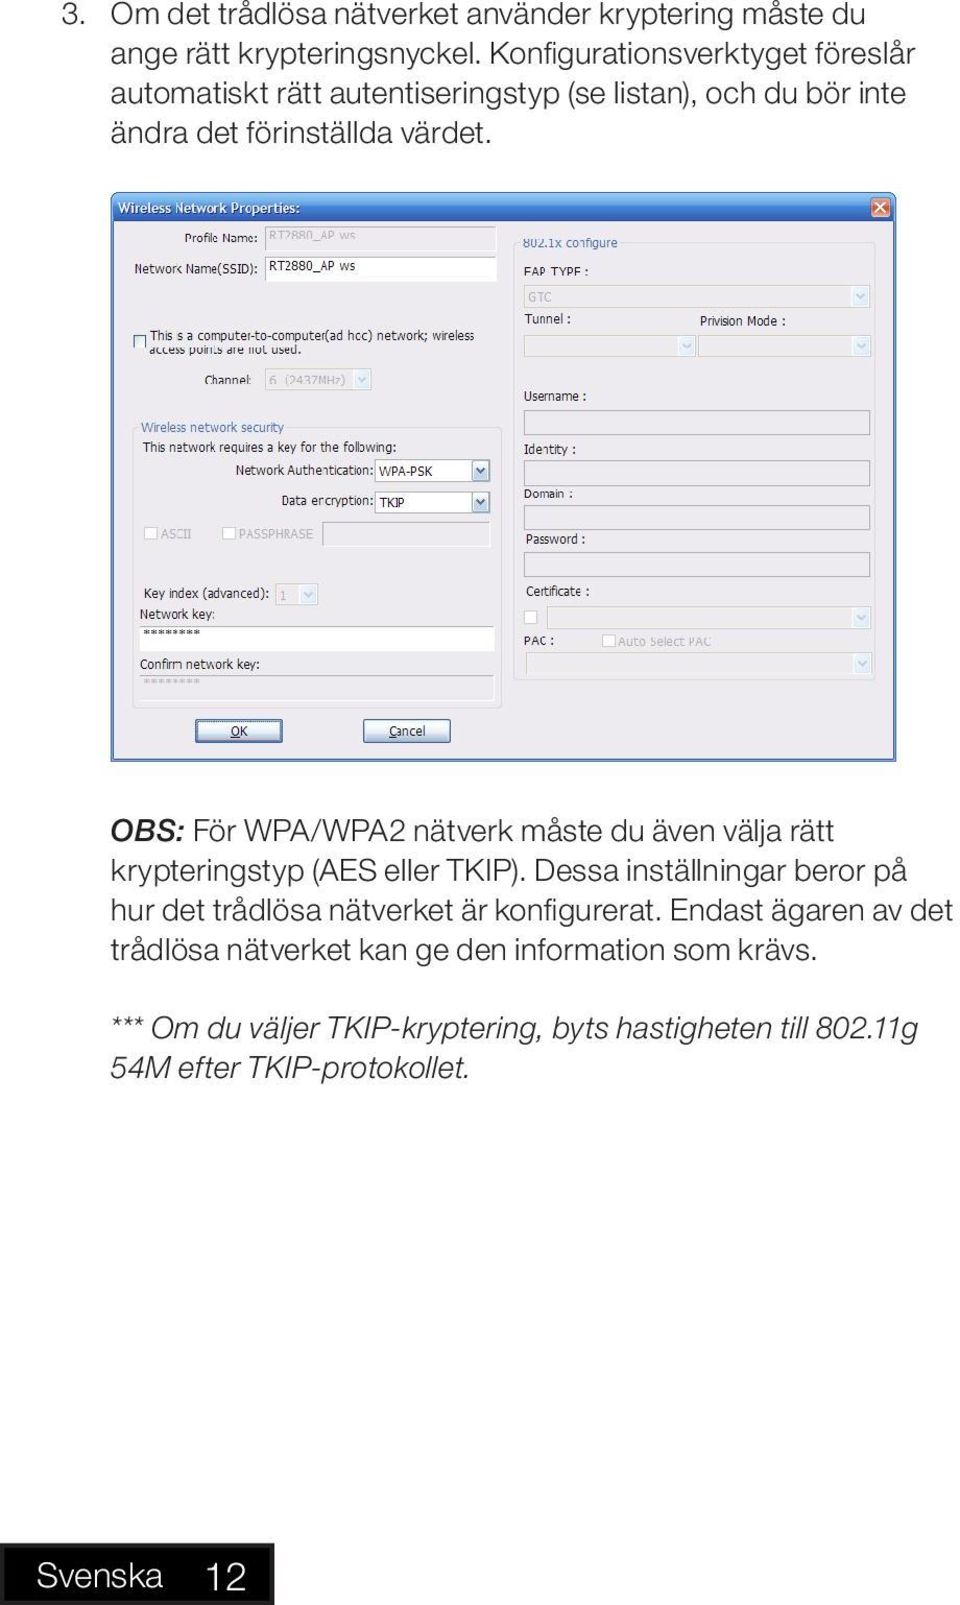 OBS: För WPA/WPA2 nätverk måste du även välja rätt krypteringstyp (AES eller TKIP).